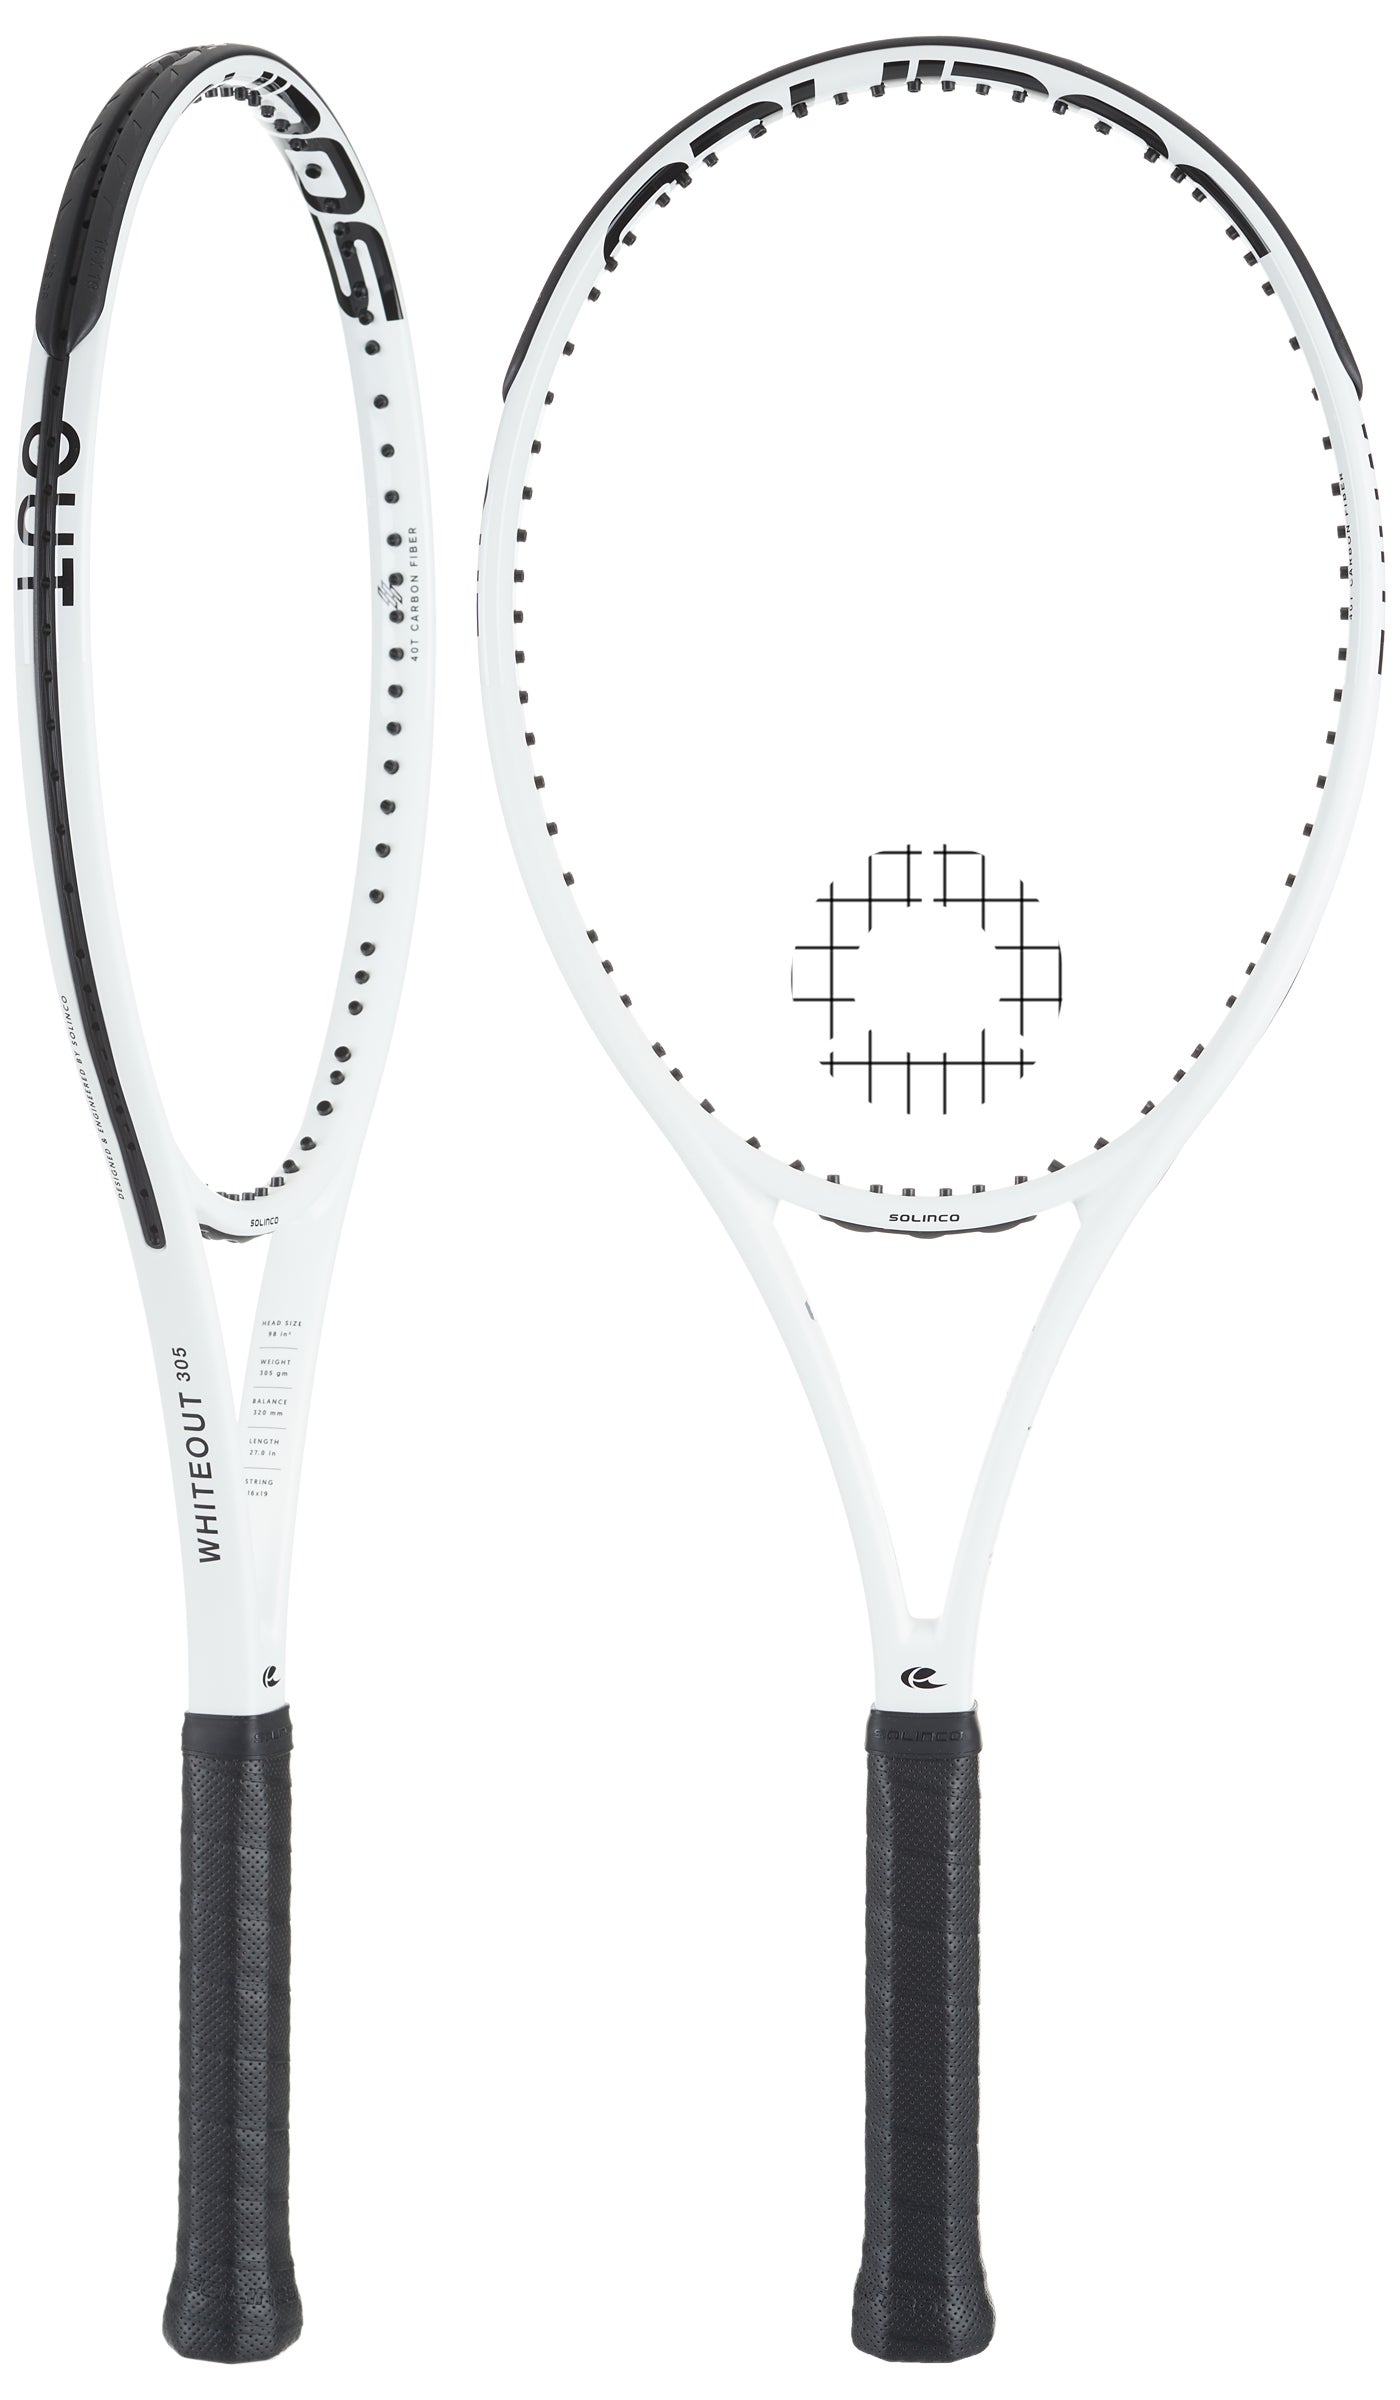 *NEU*Solinco Tour Bite SOFT Saitenset 12m Tennis 1.25mm silber 16L stringset new 